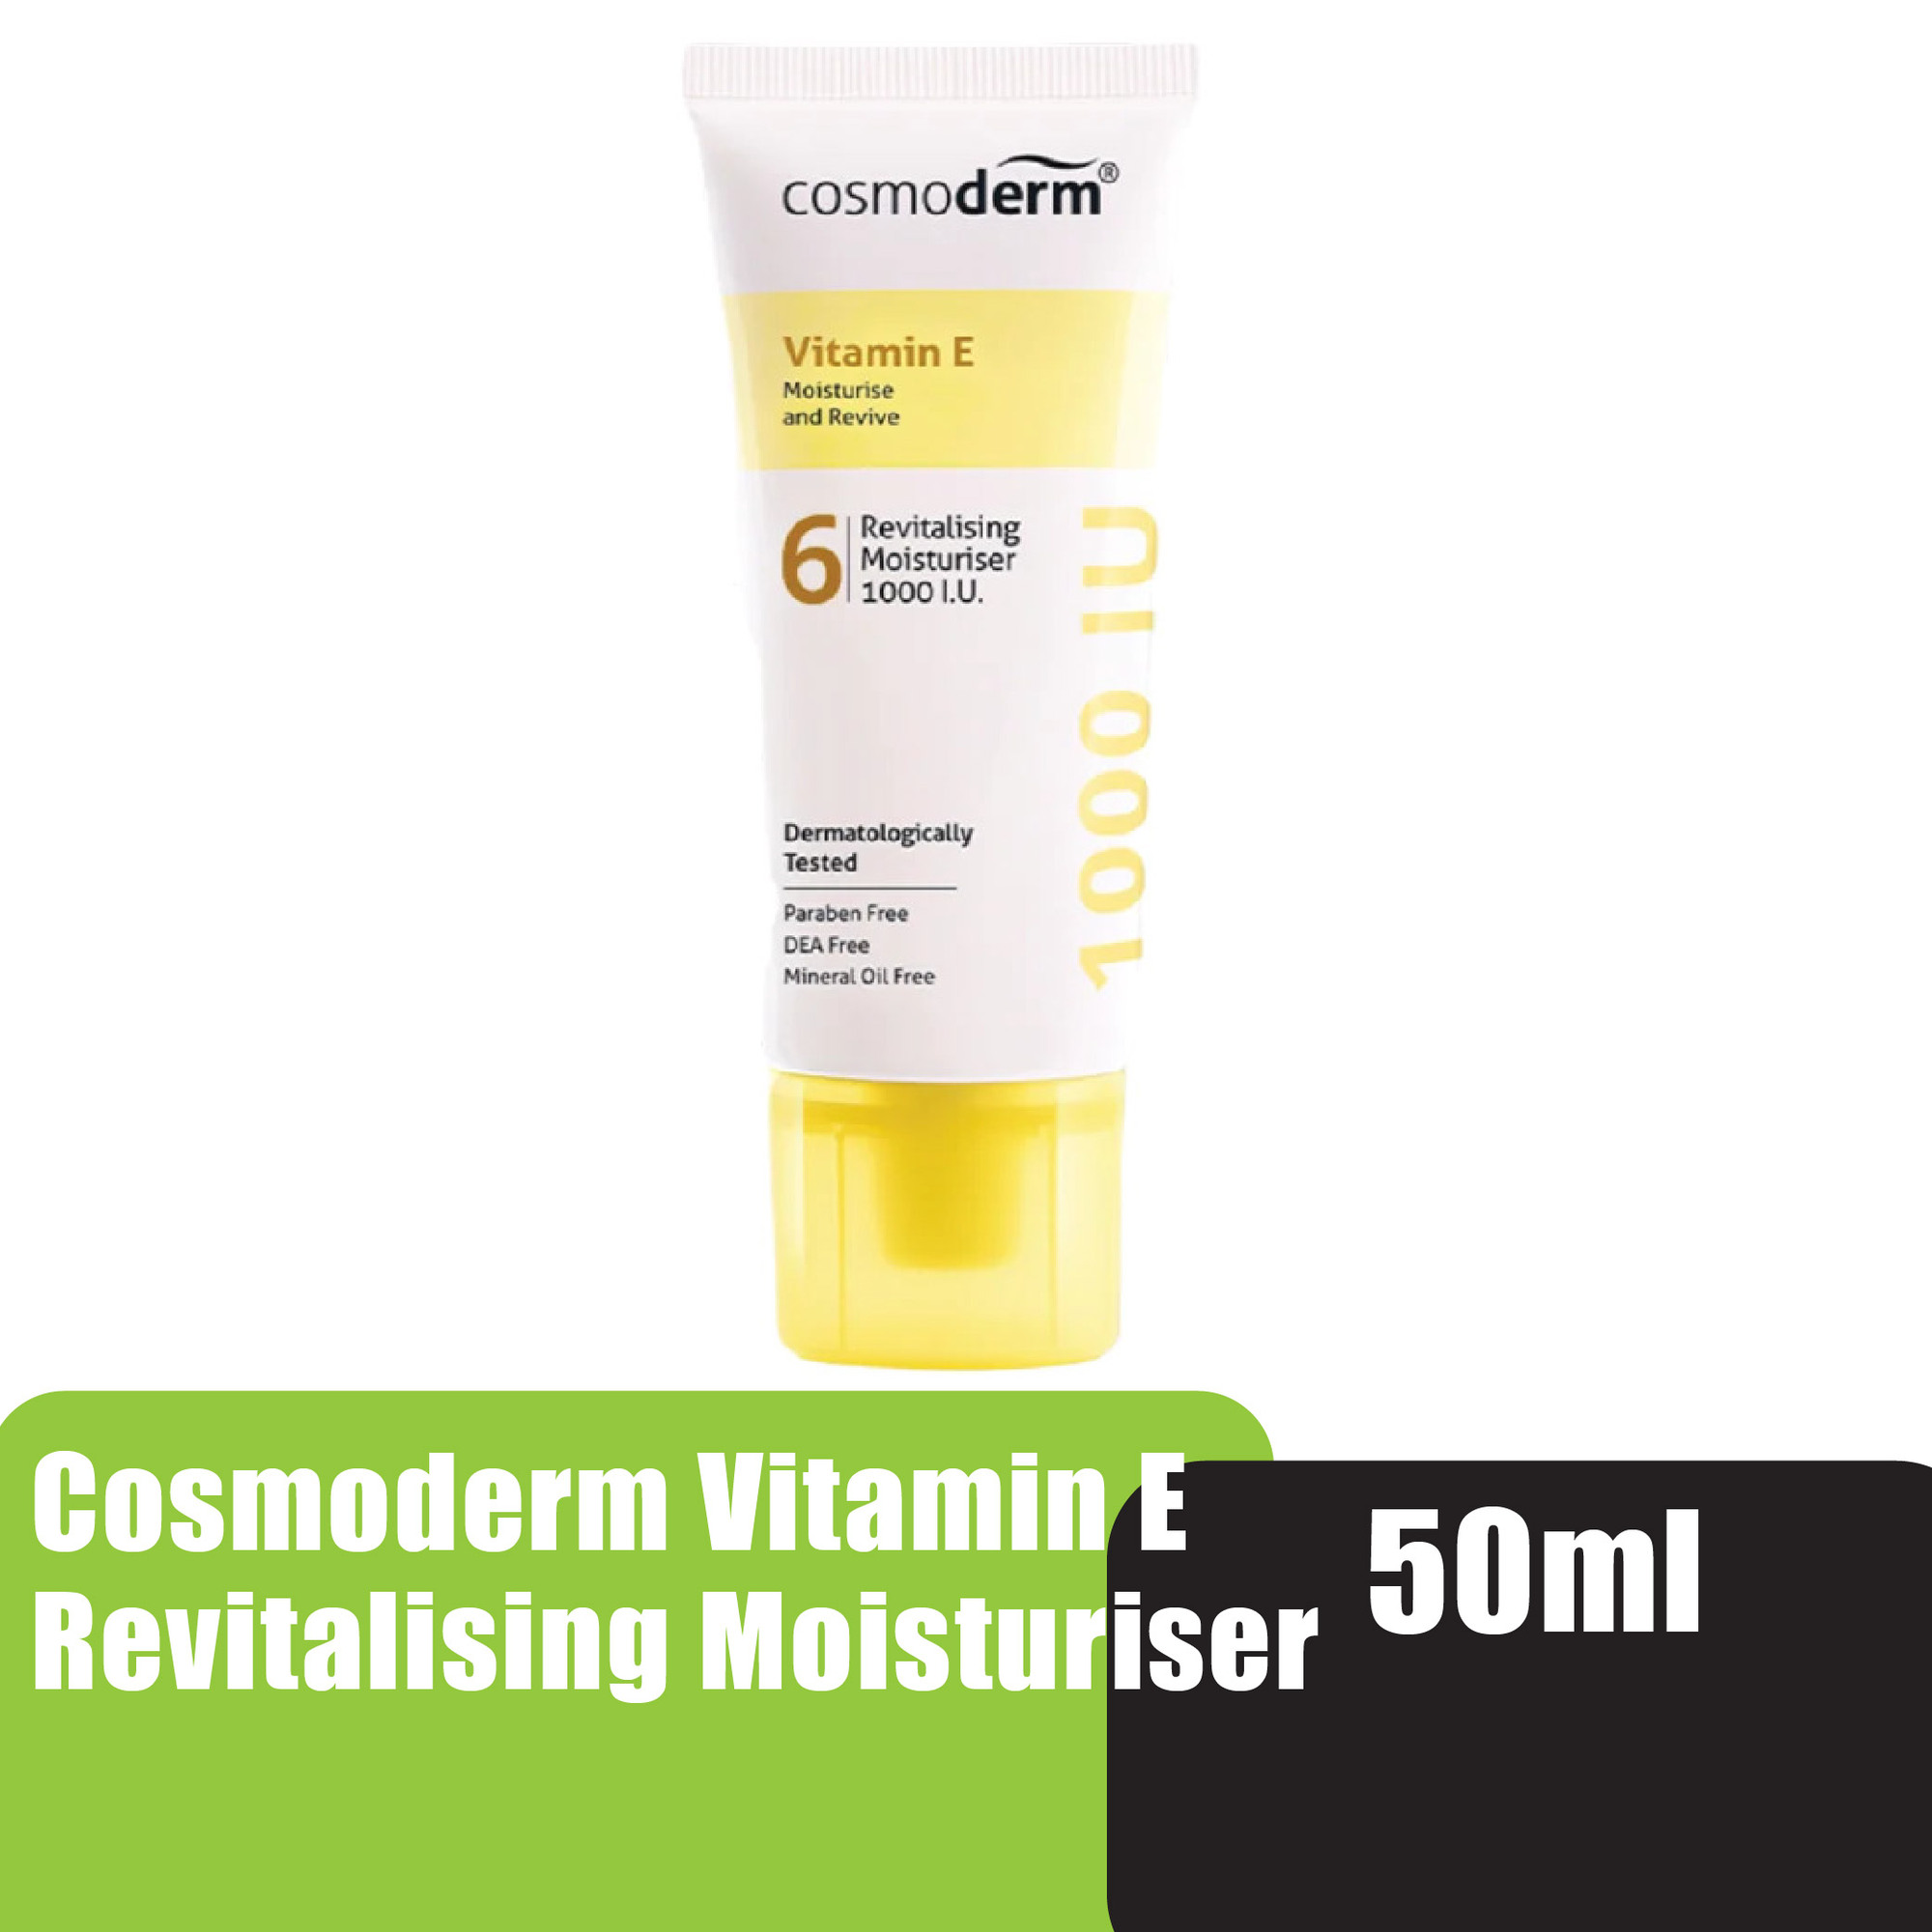 Cosmoderm Vitamin E Revitalising Moisturiser 1000 I.U. 50ml